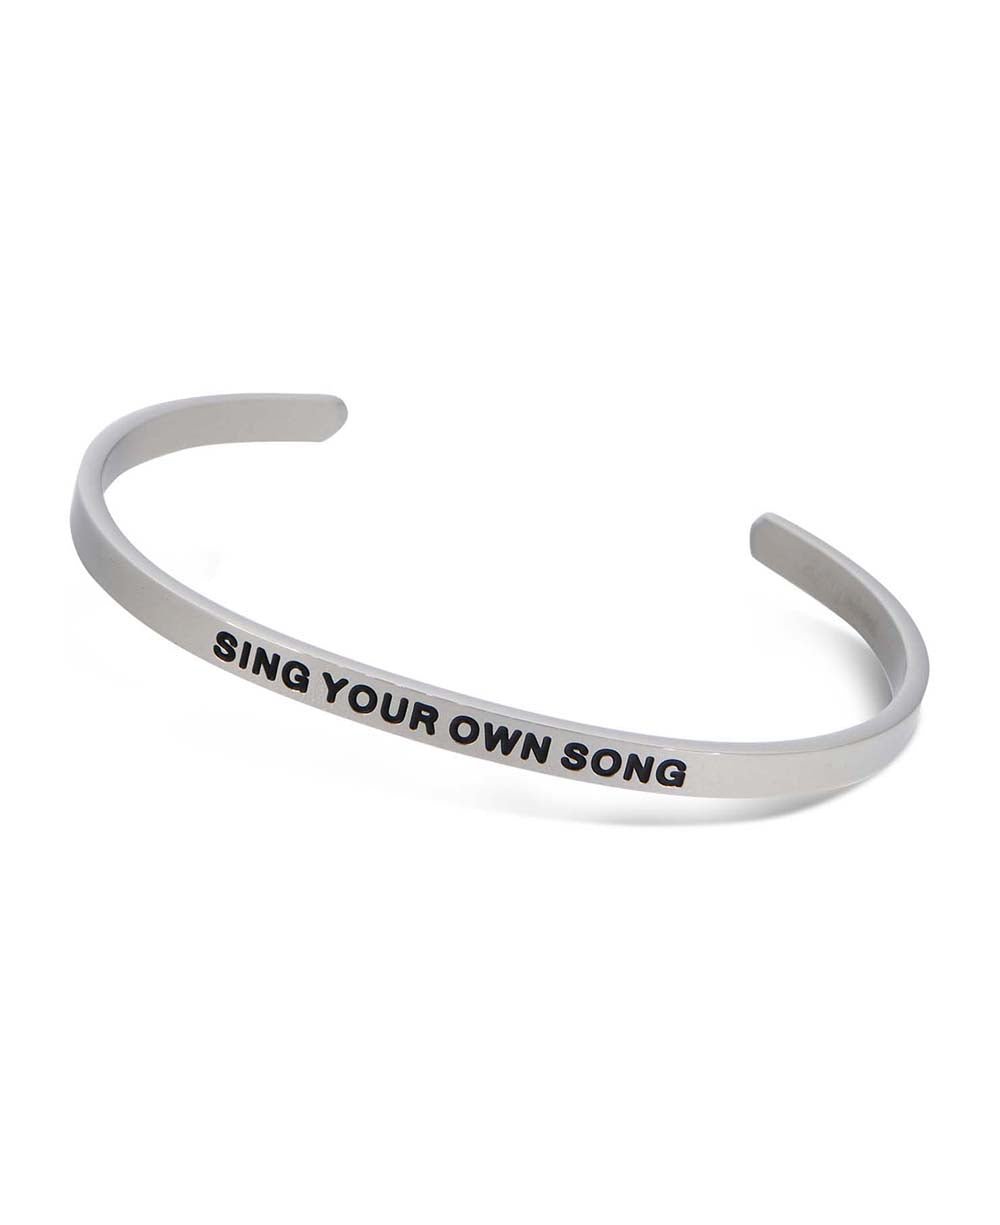 Sing Your Own Song Sleek Cuff Bracelet - Bracelets